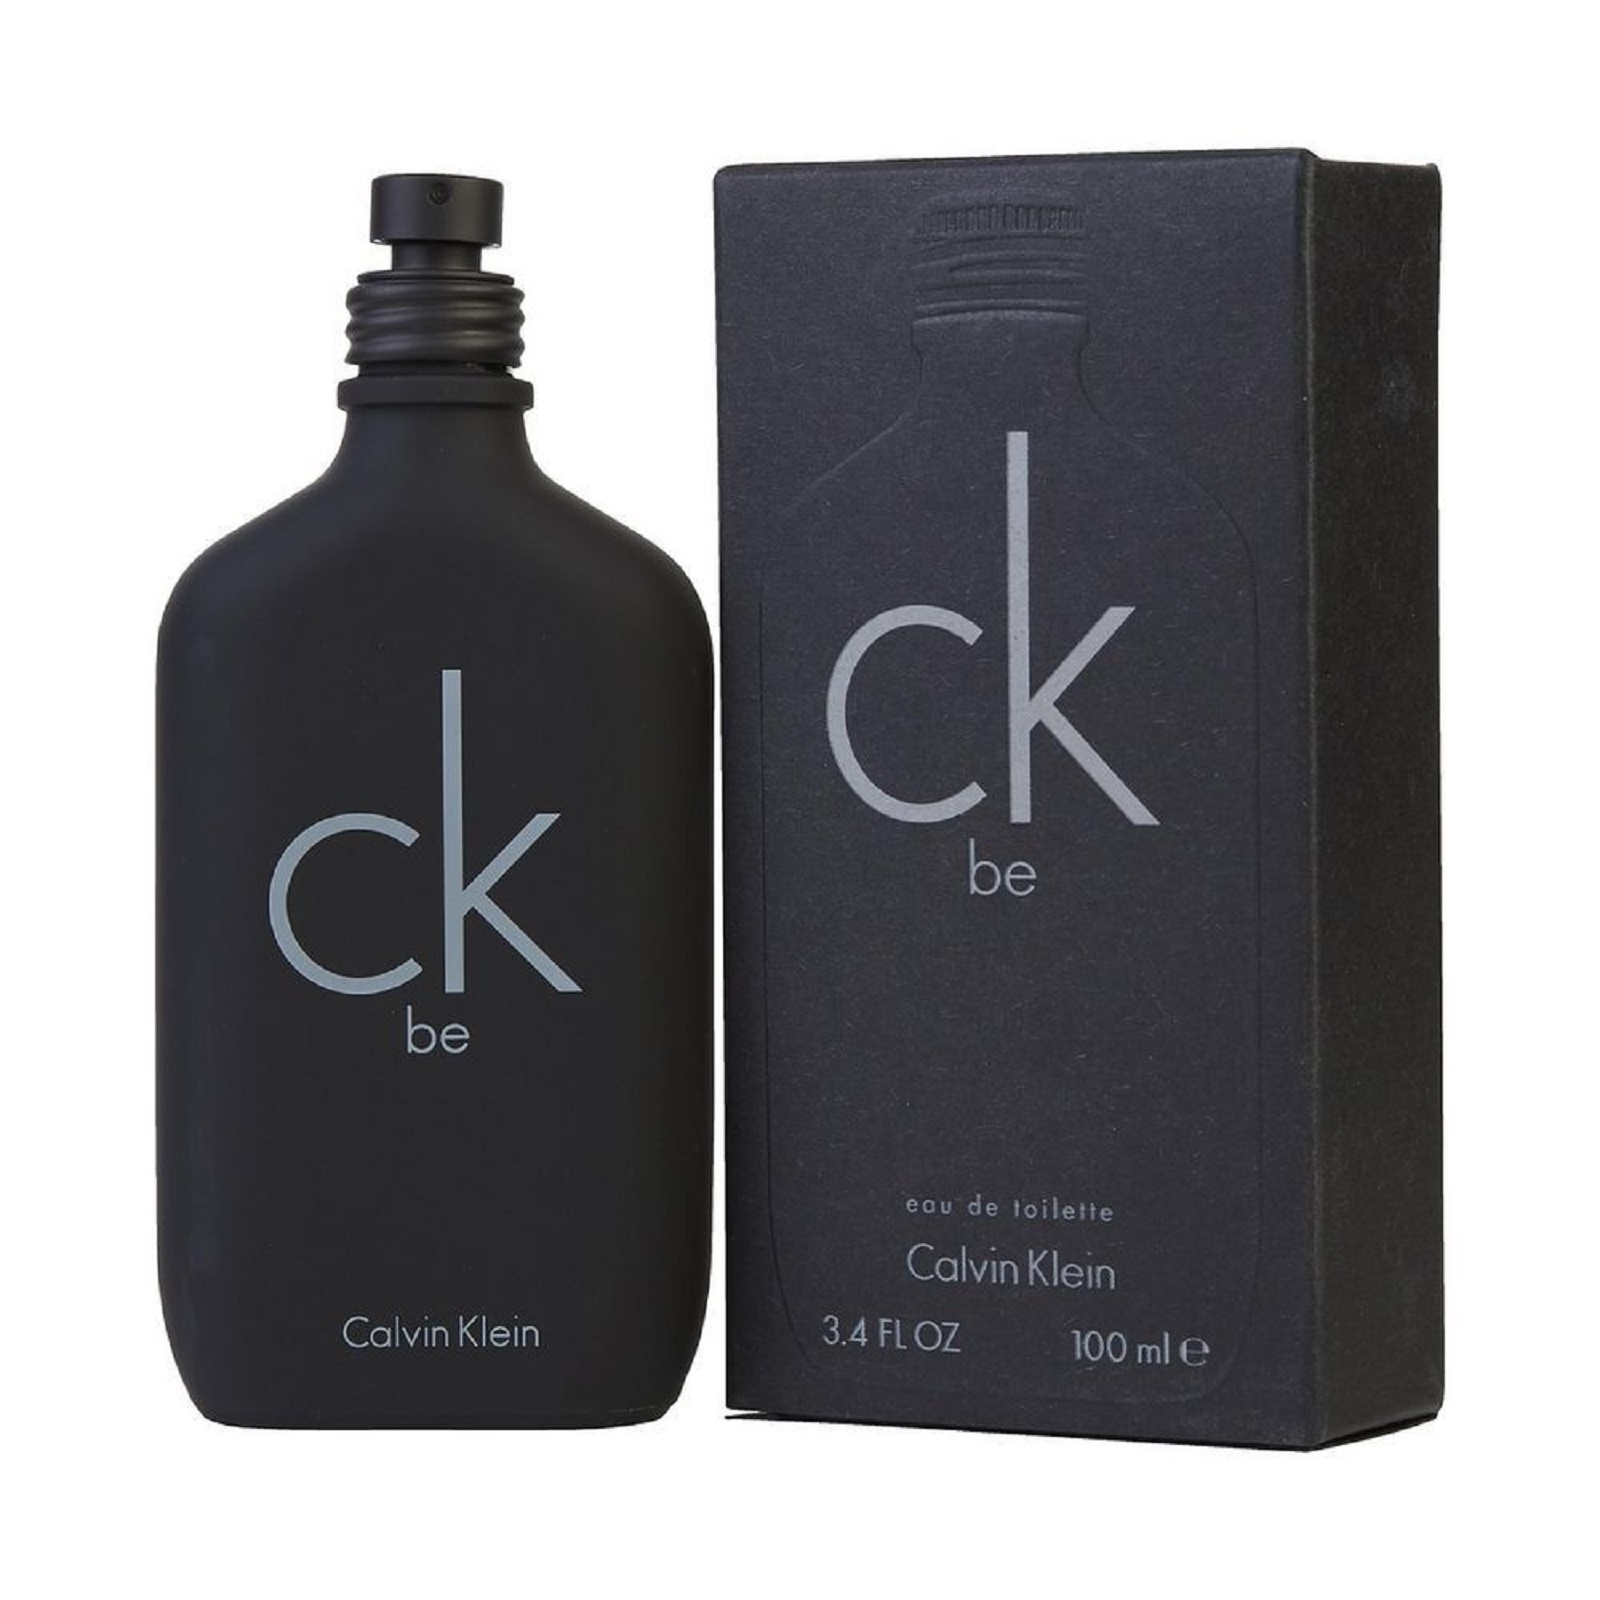 Perfume Hombre Ck Be Eau de Toilette 100ml Calvin Klein